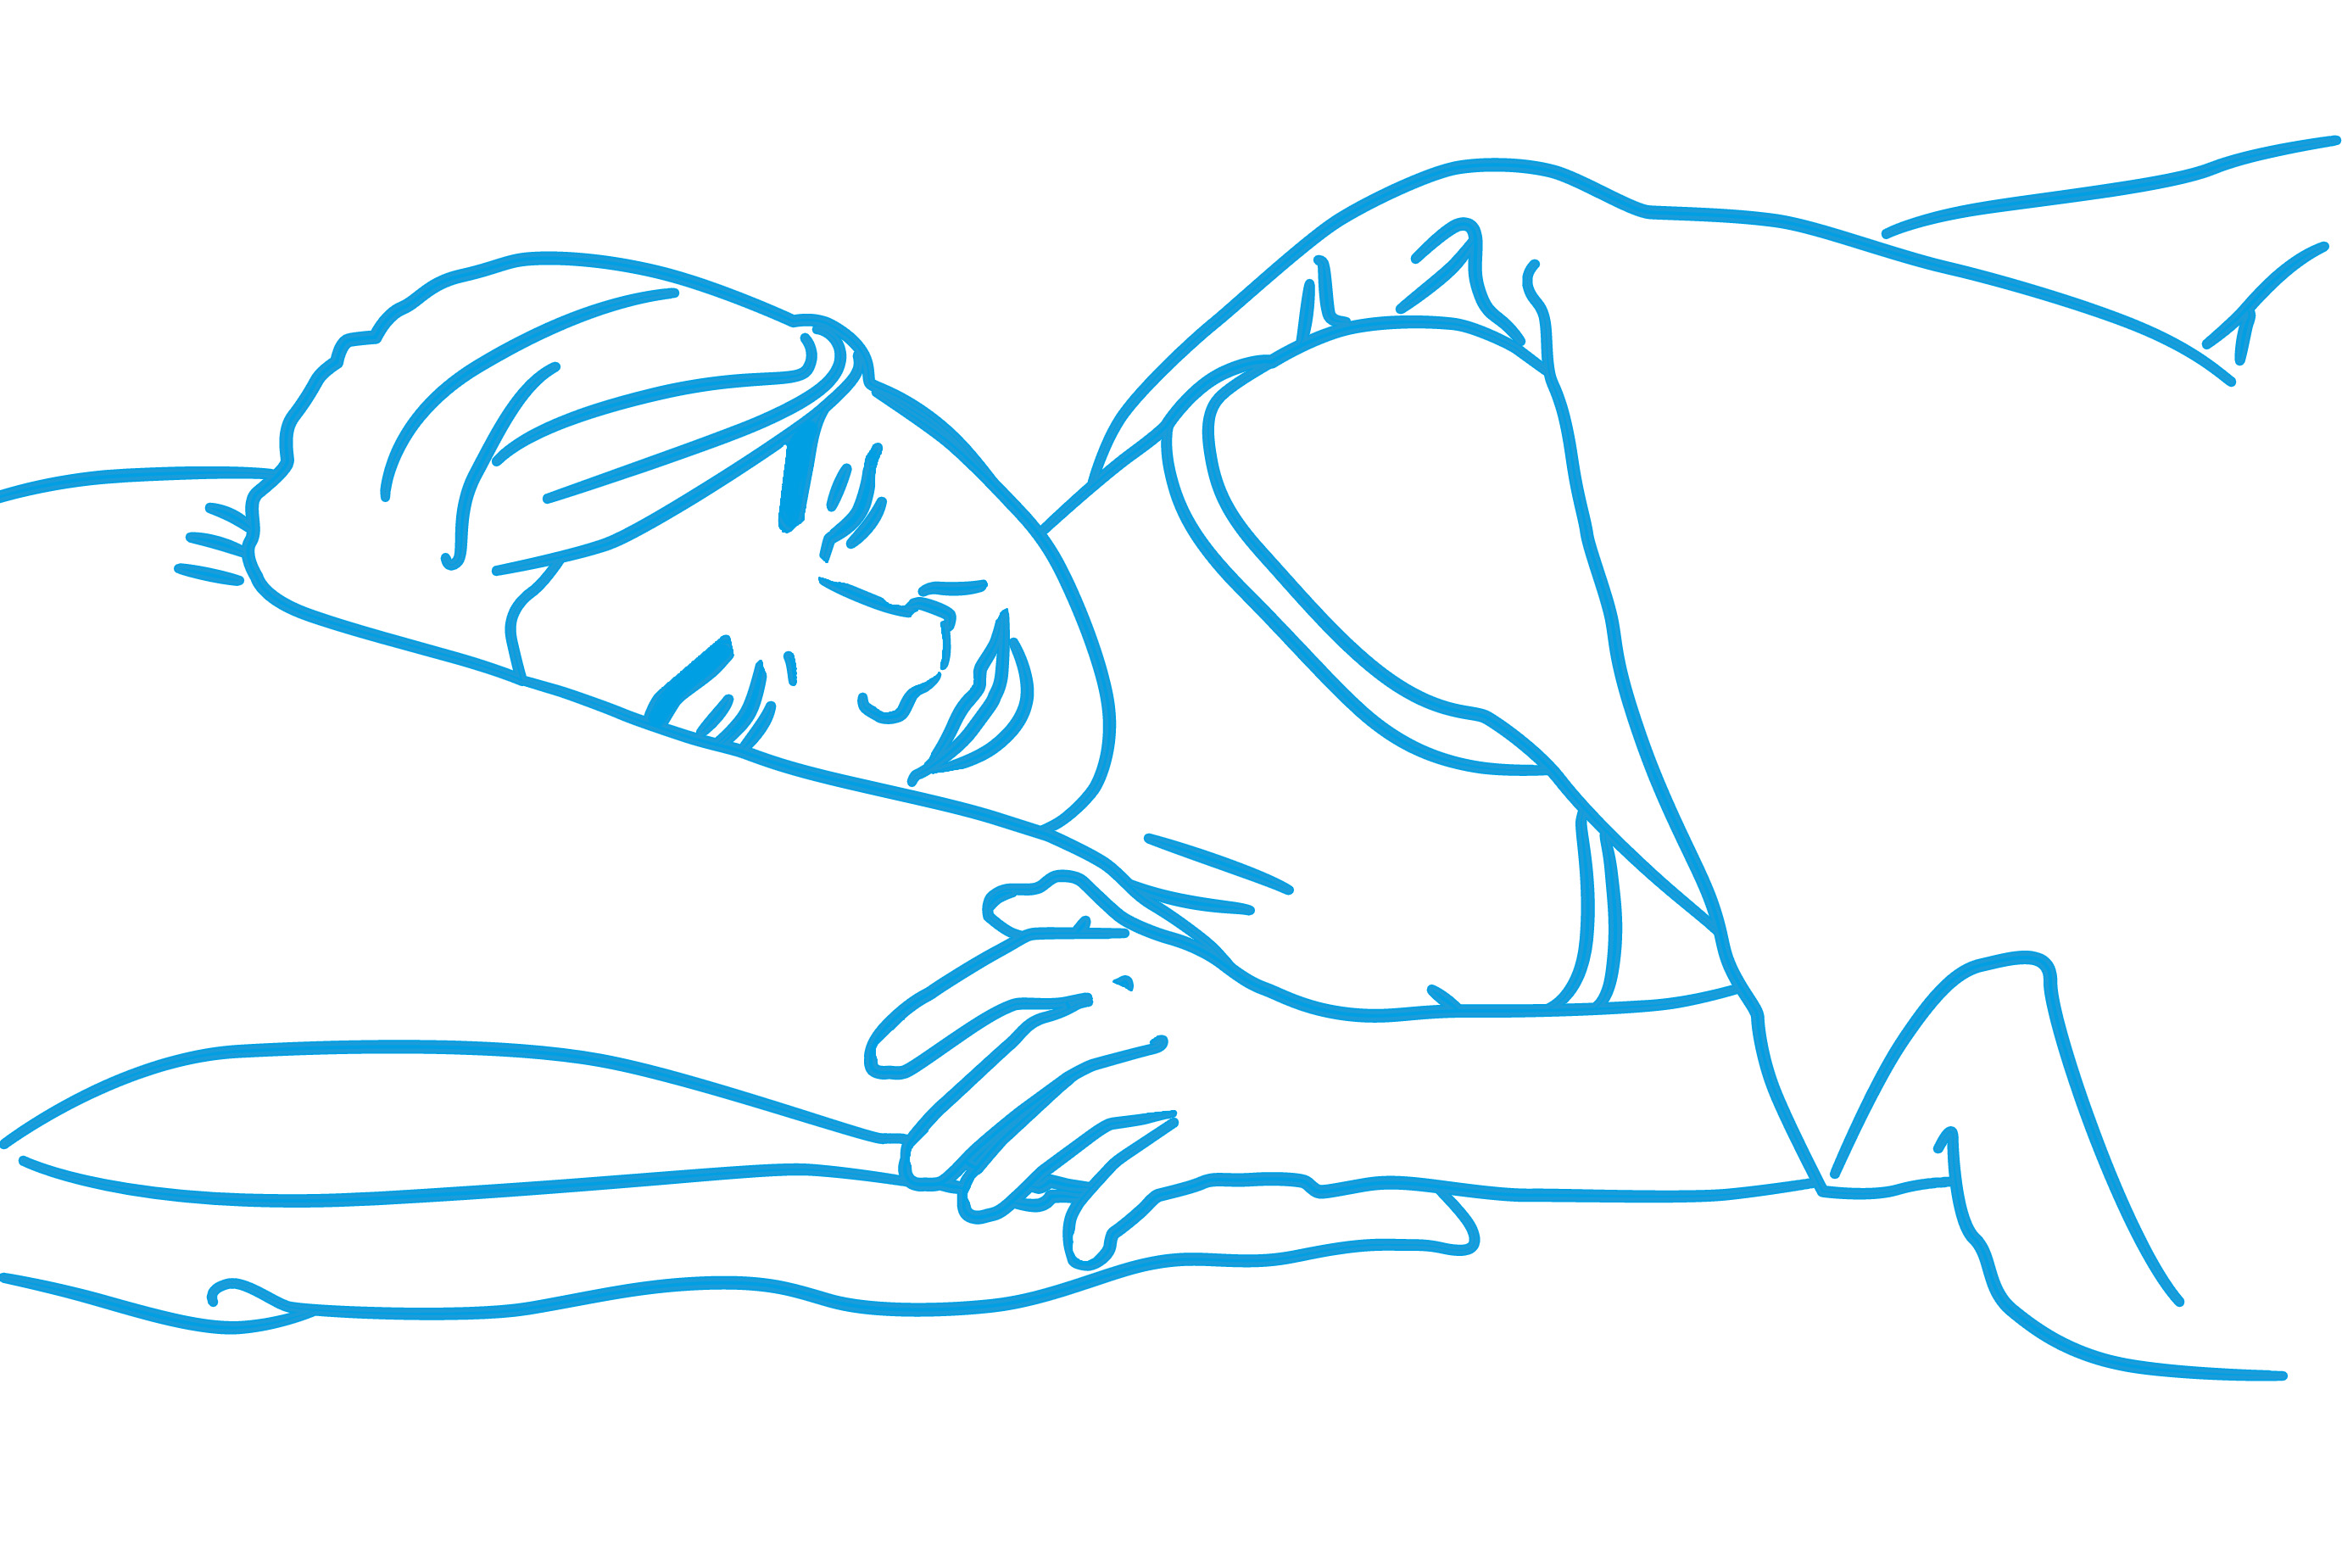 Zdrowe pozycje do spania, komfort snu, spanie na boku